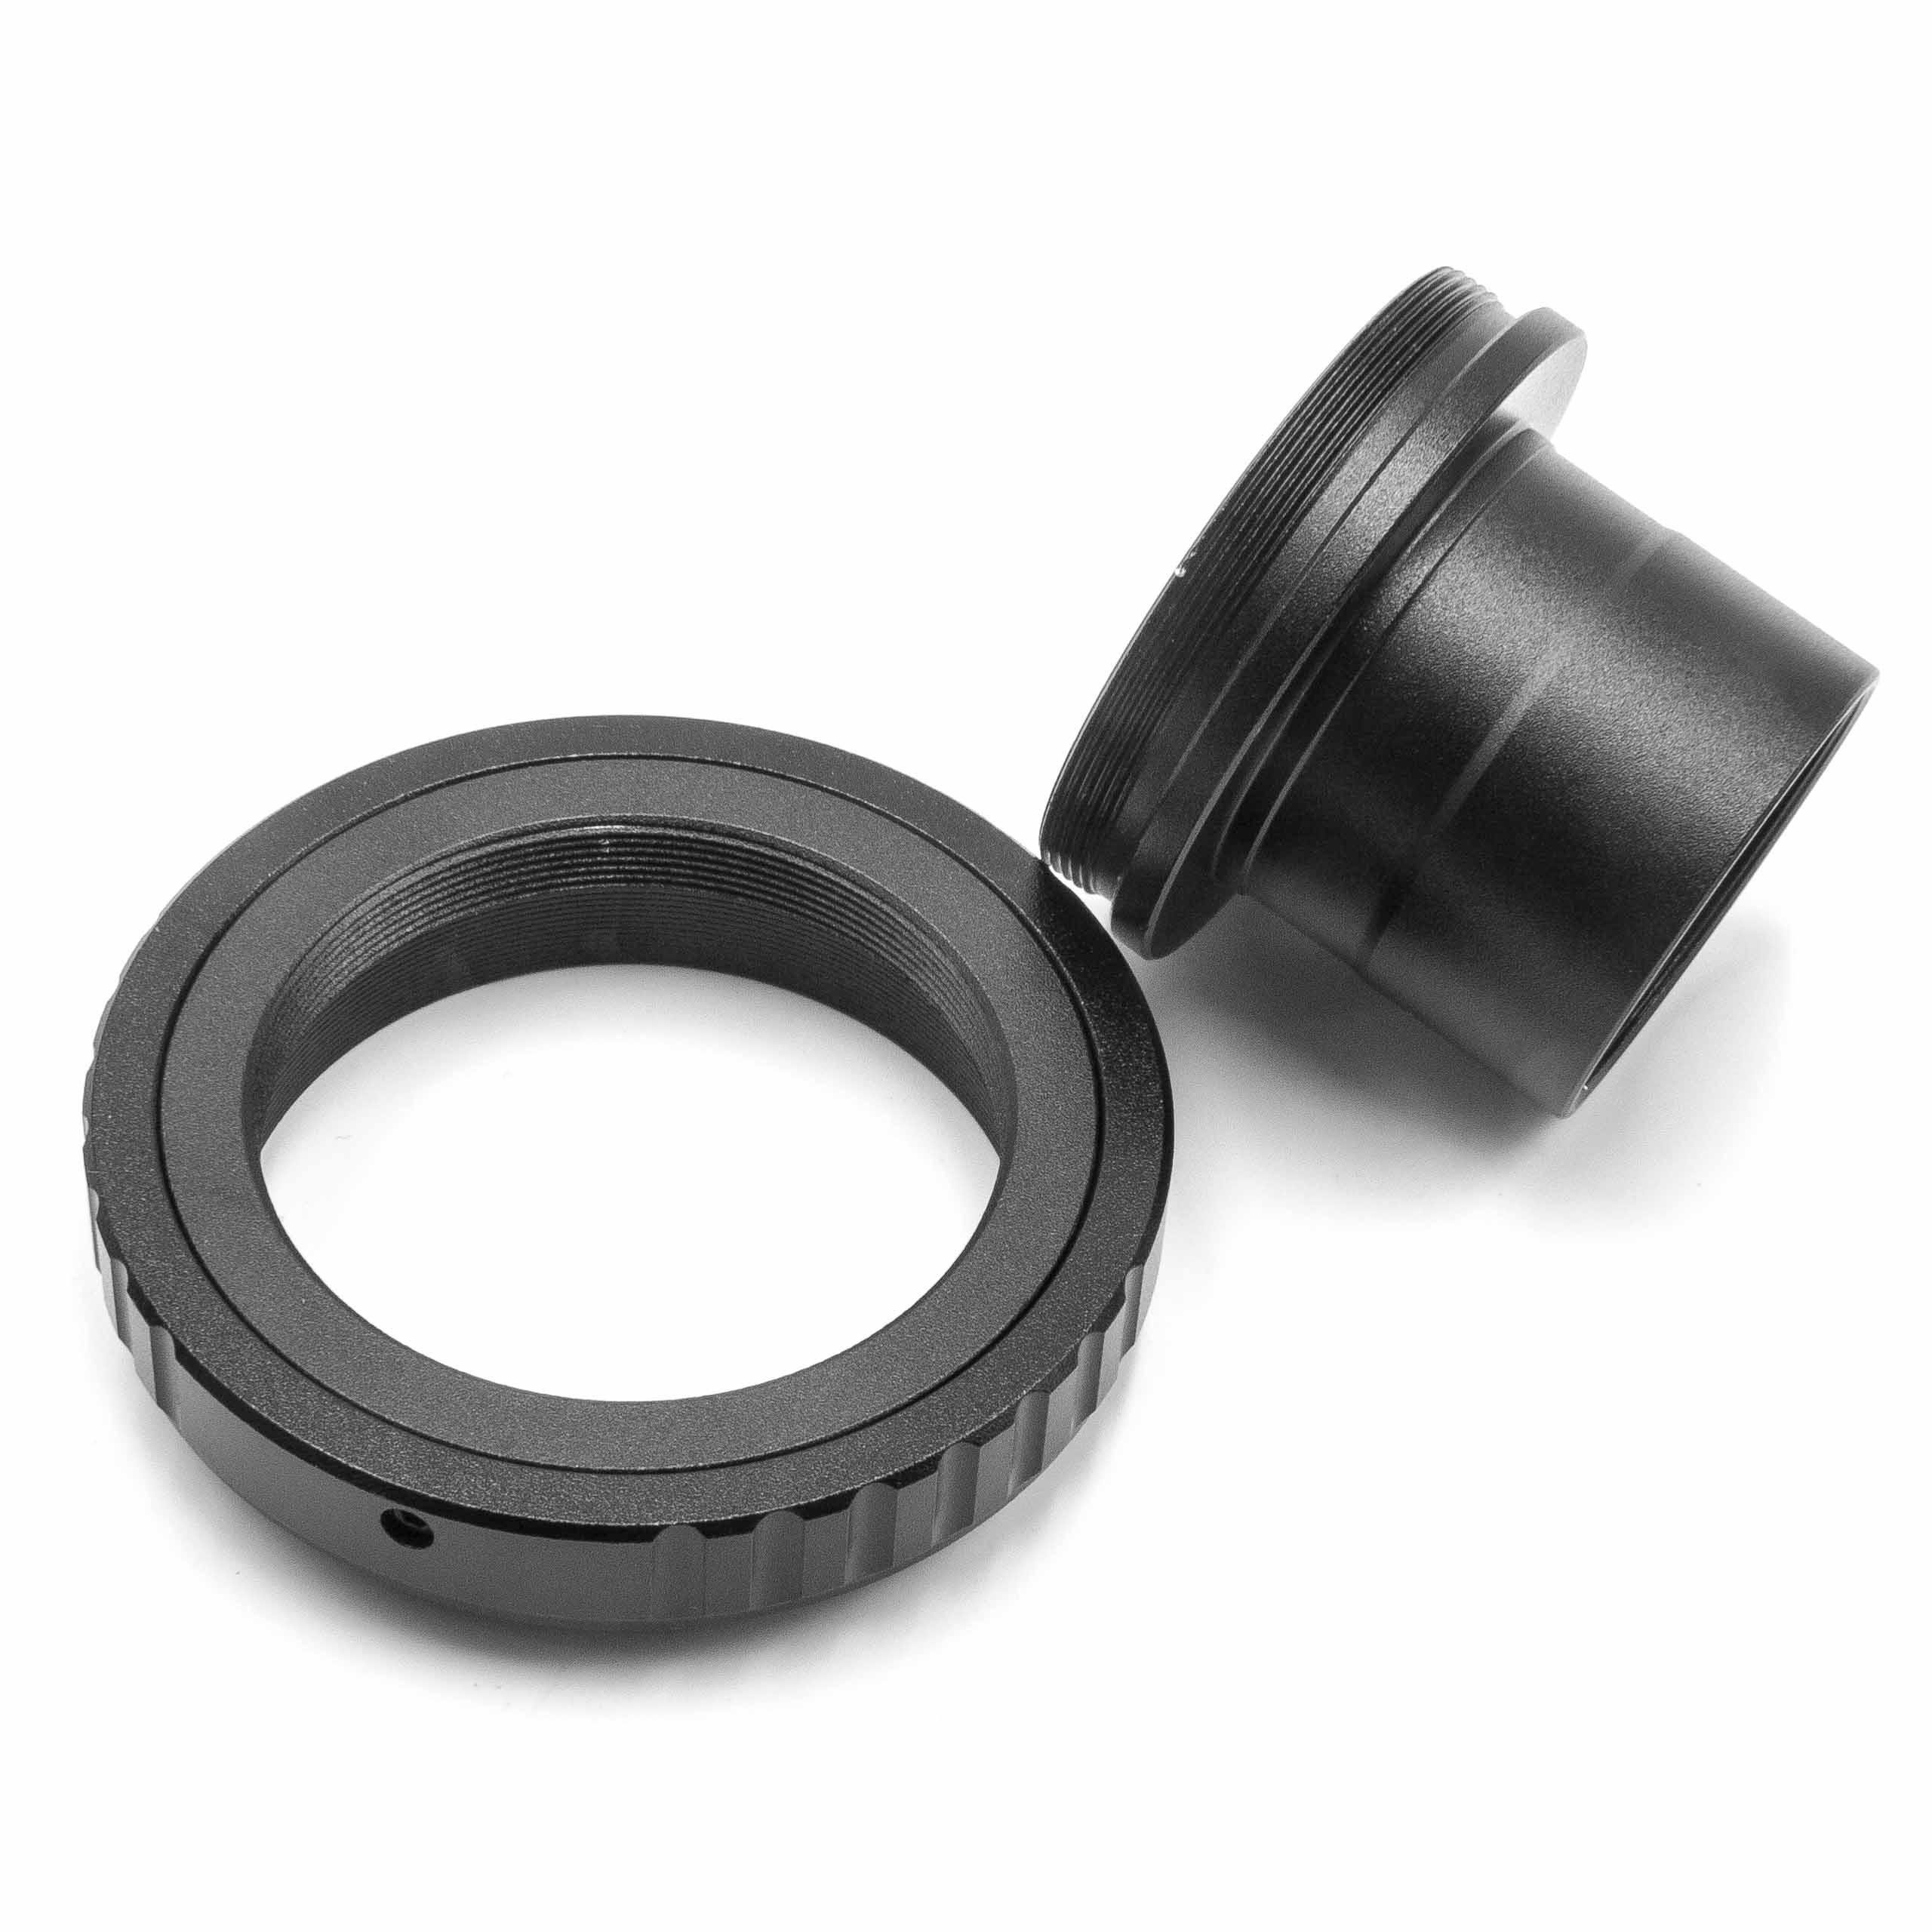 Gewindeanschluss für T2 AF Minolta Objektivzubehör vhbw passend Kamera mit